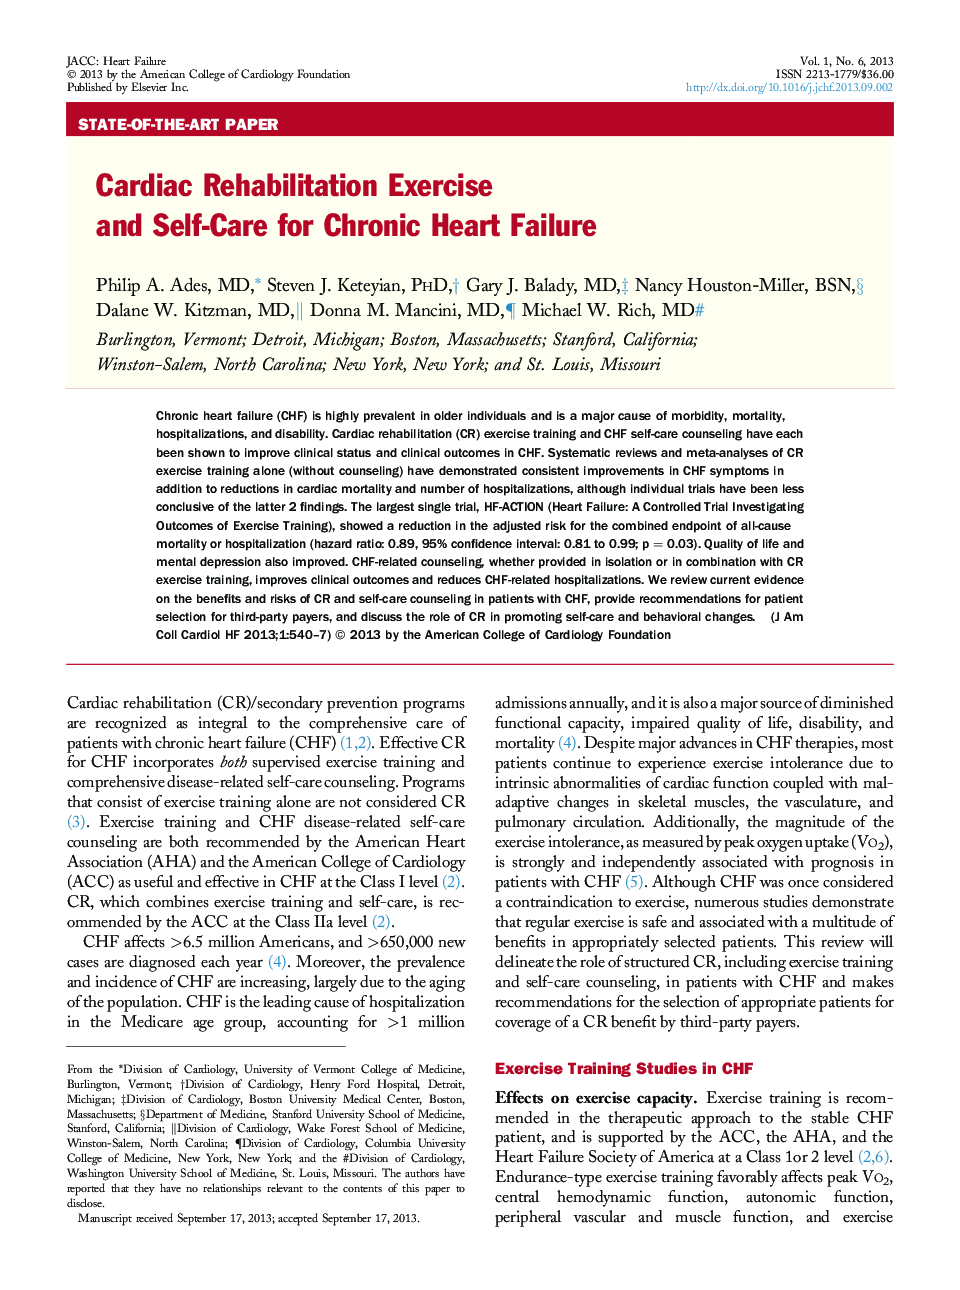 Cardiac Rehabilitation Exercise and Self-Care for Chronic Heart Failure 